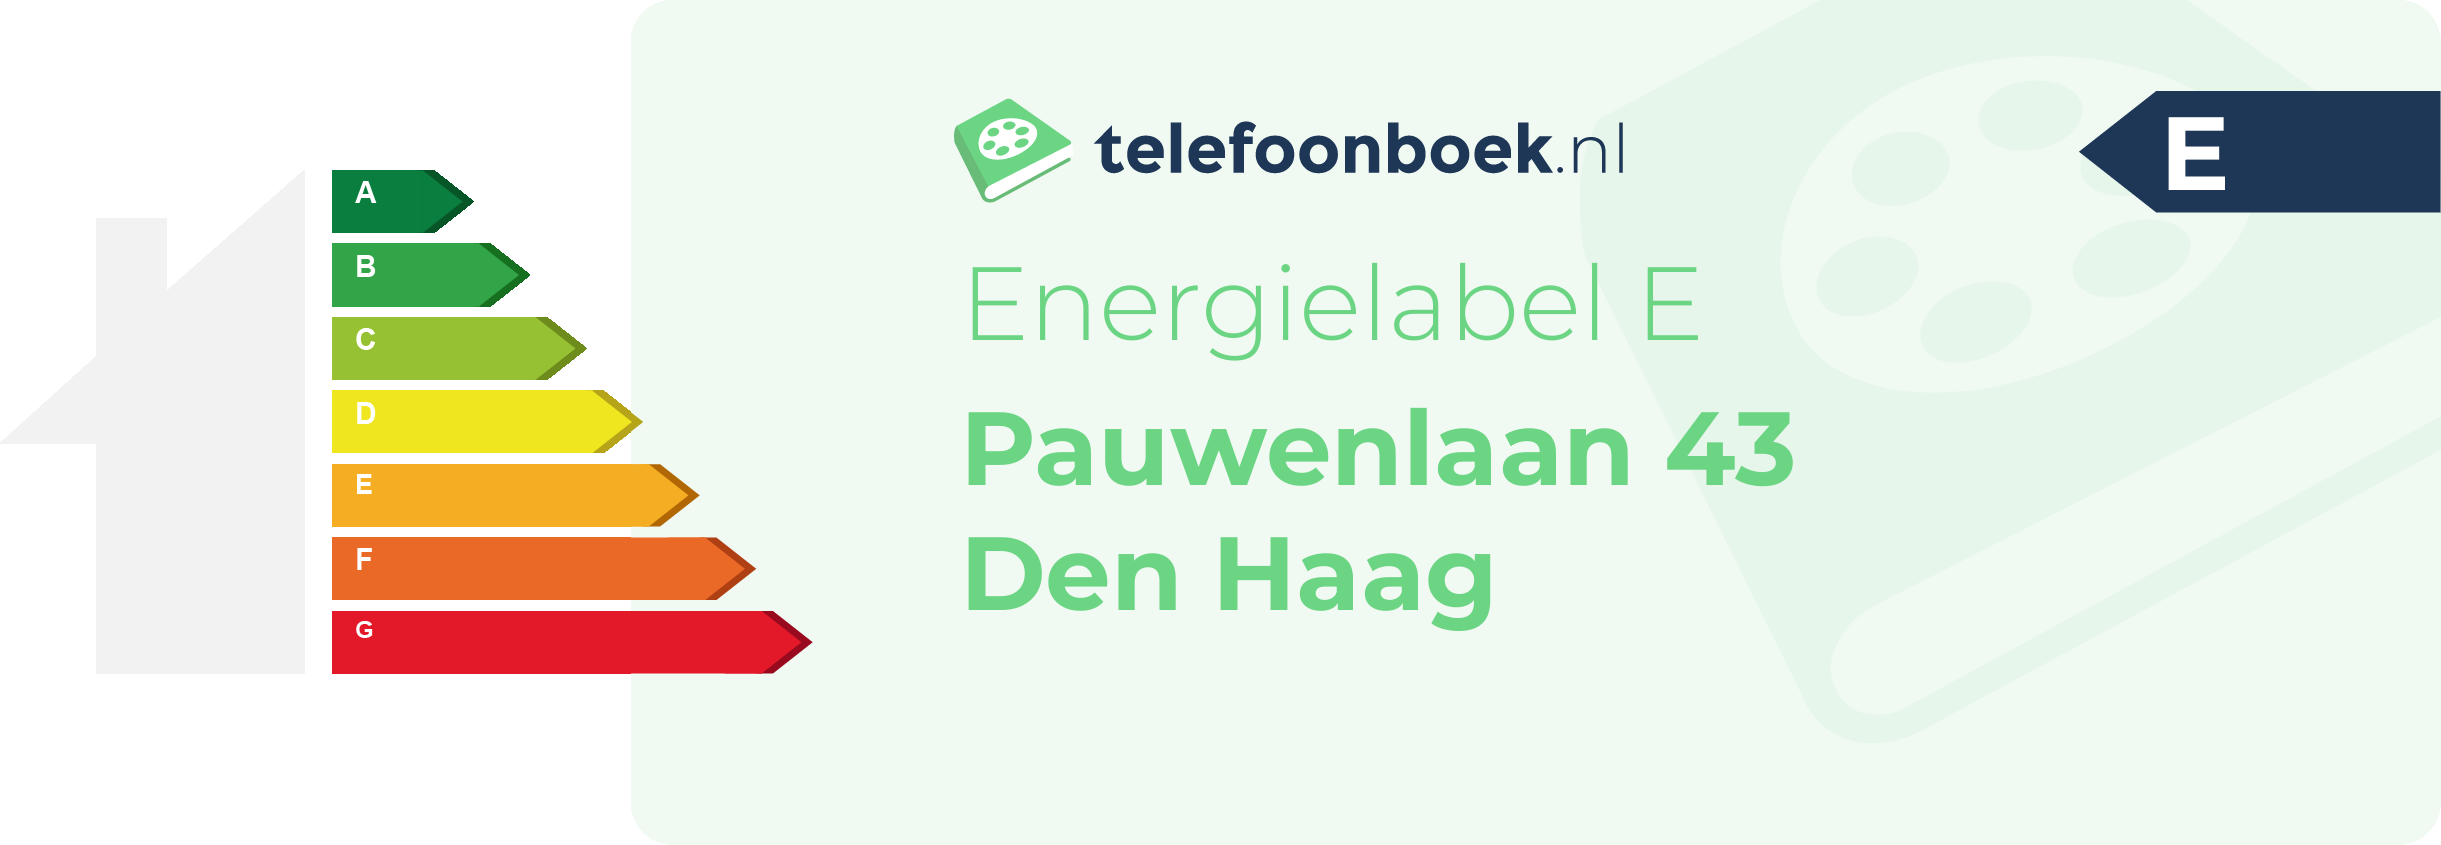 Energielabel Pauwenlaan 43 Den Haag